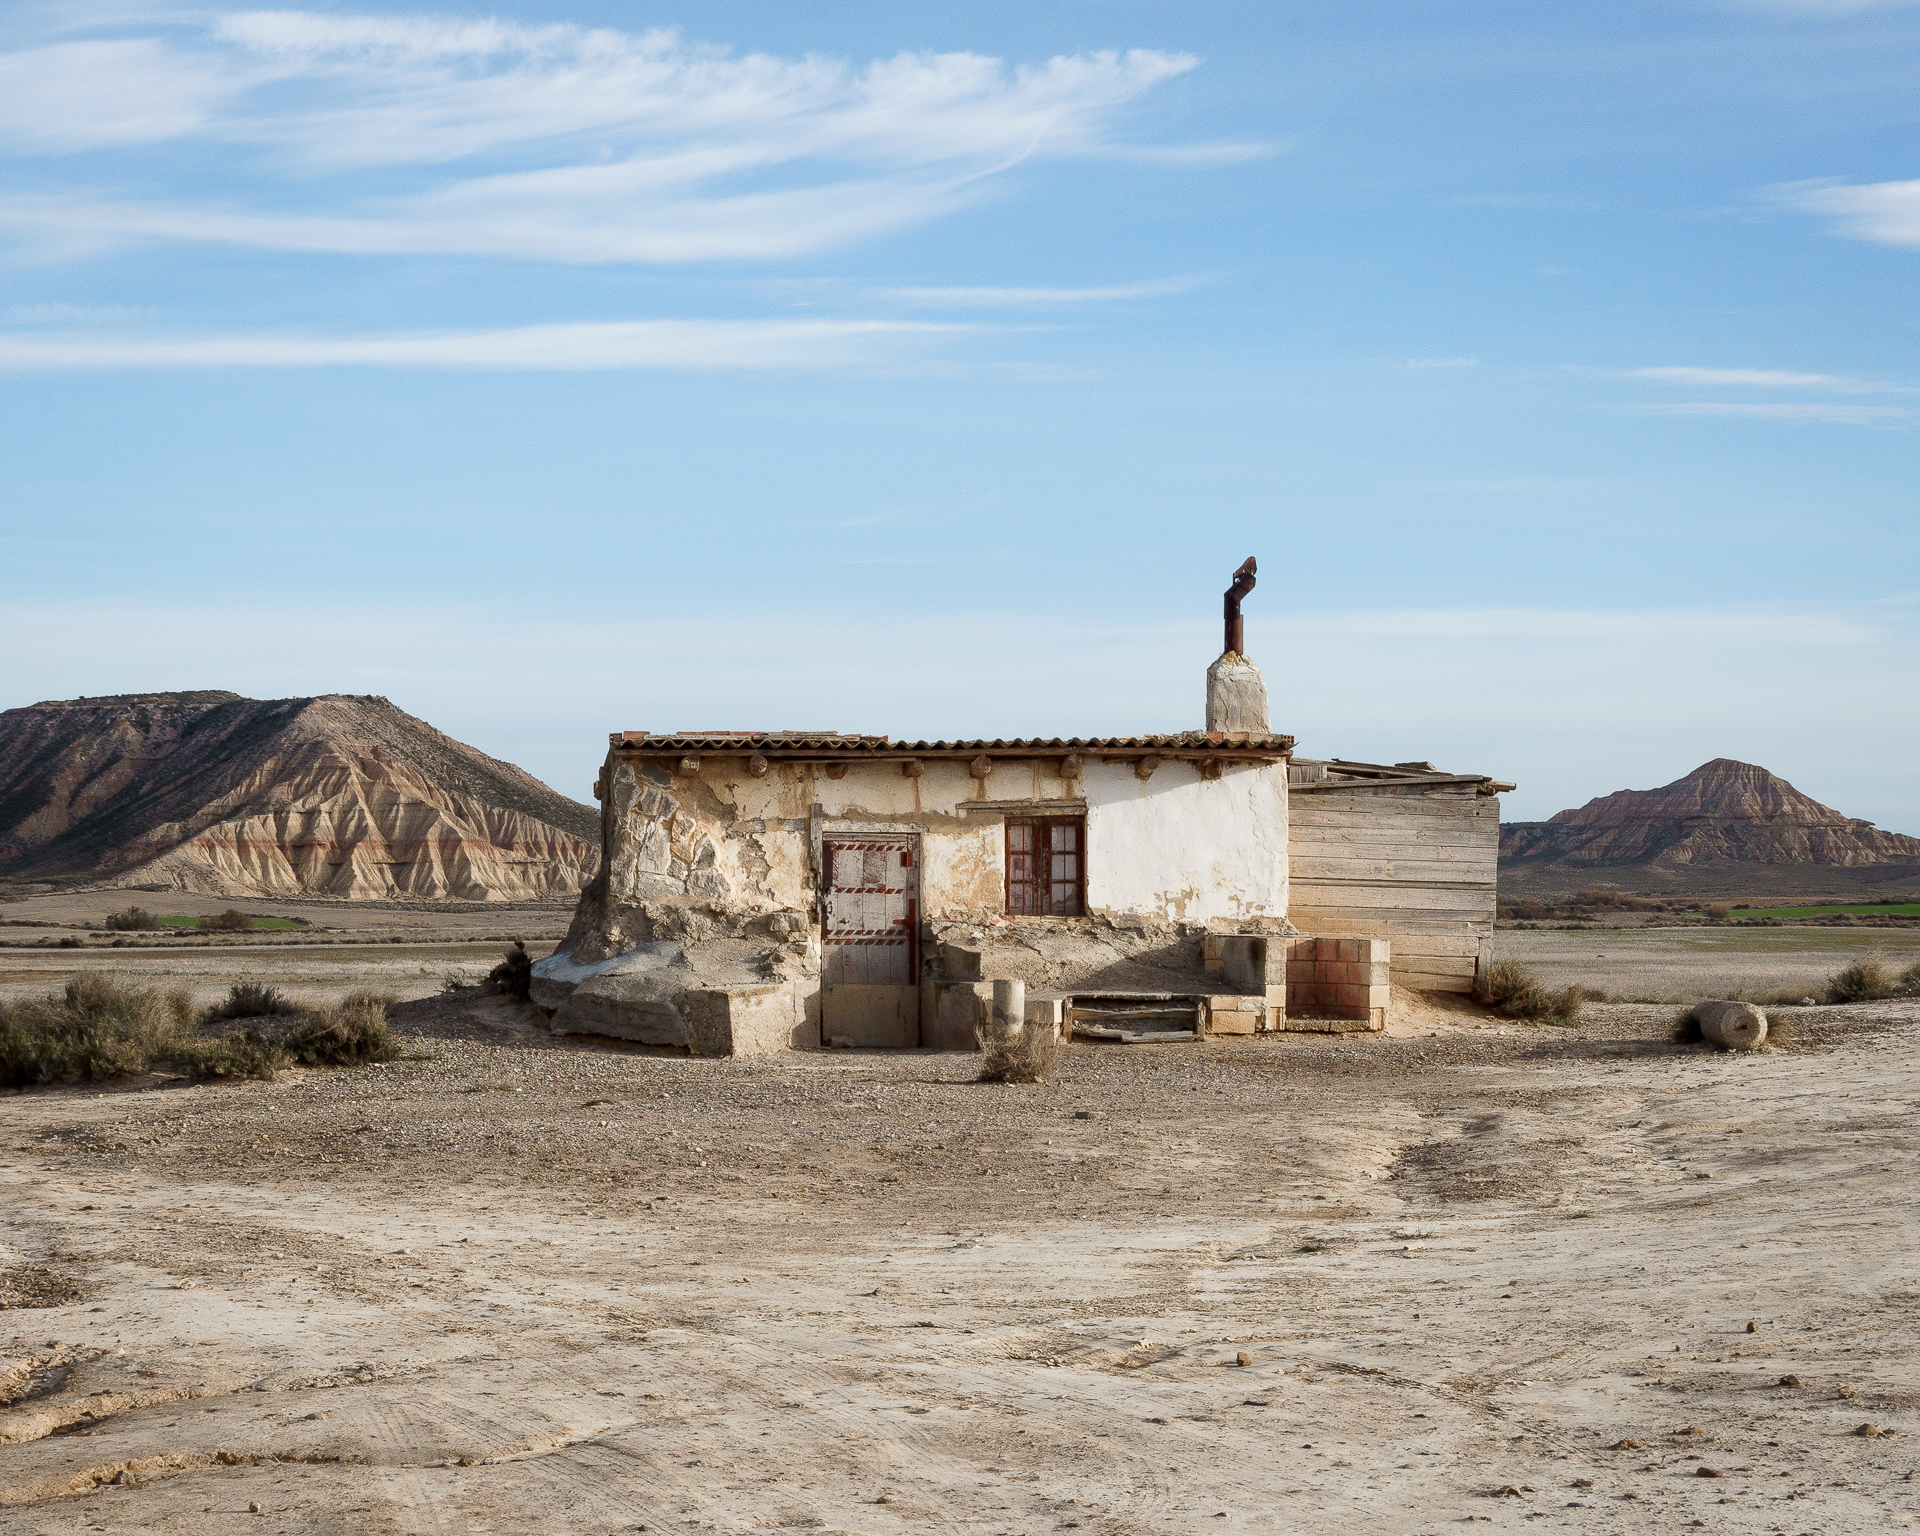 Photo prise par Lucas Dumortier d'une maison au cœur d'un desert lors de son voyage de dix mois Europe